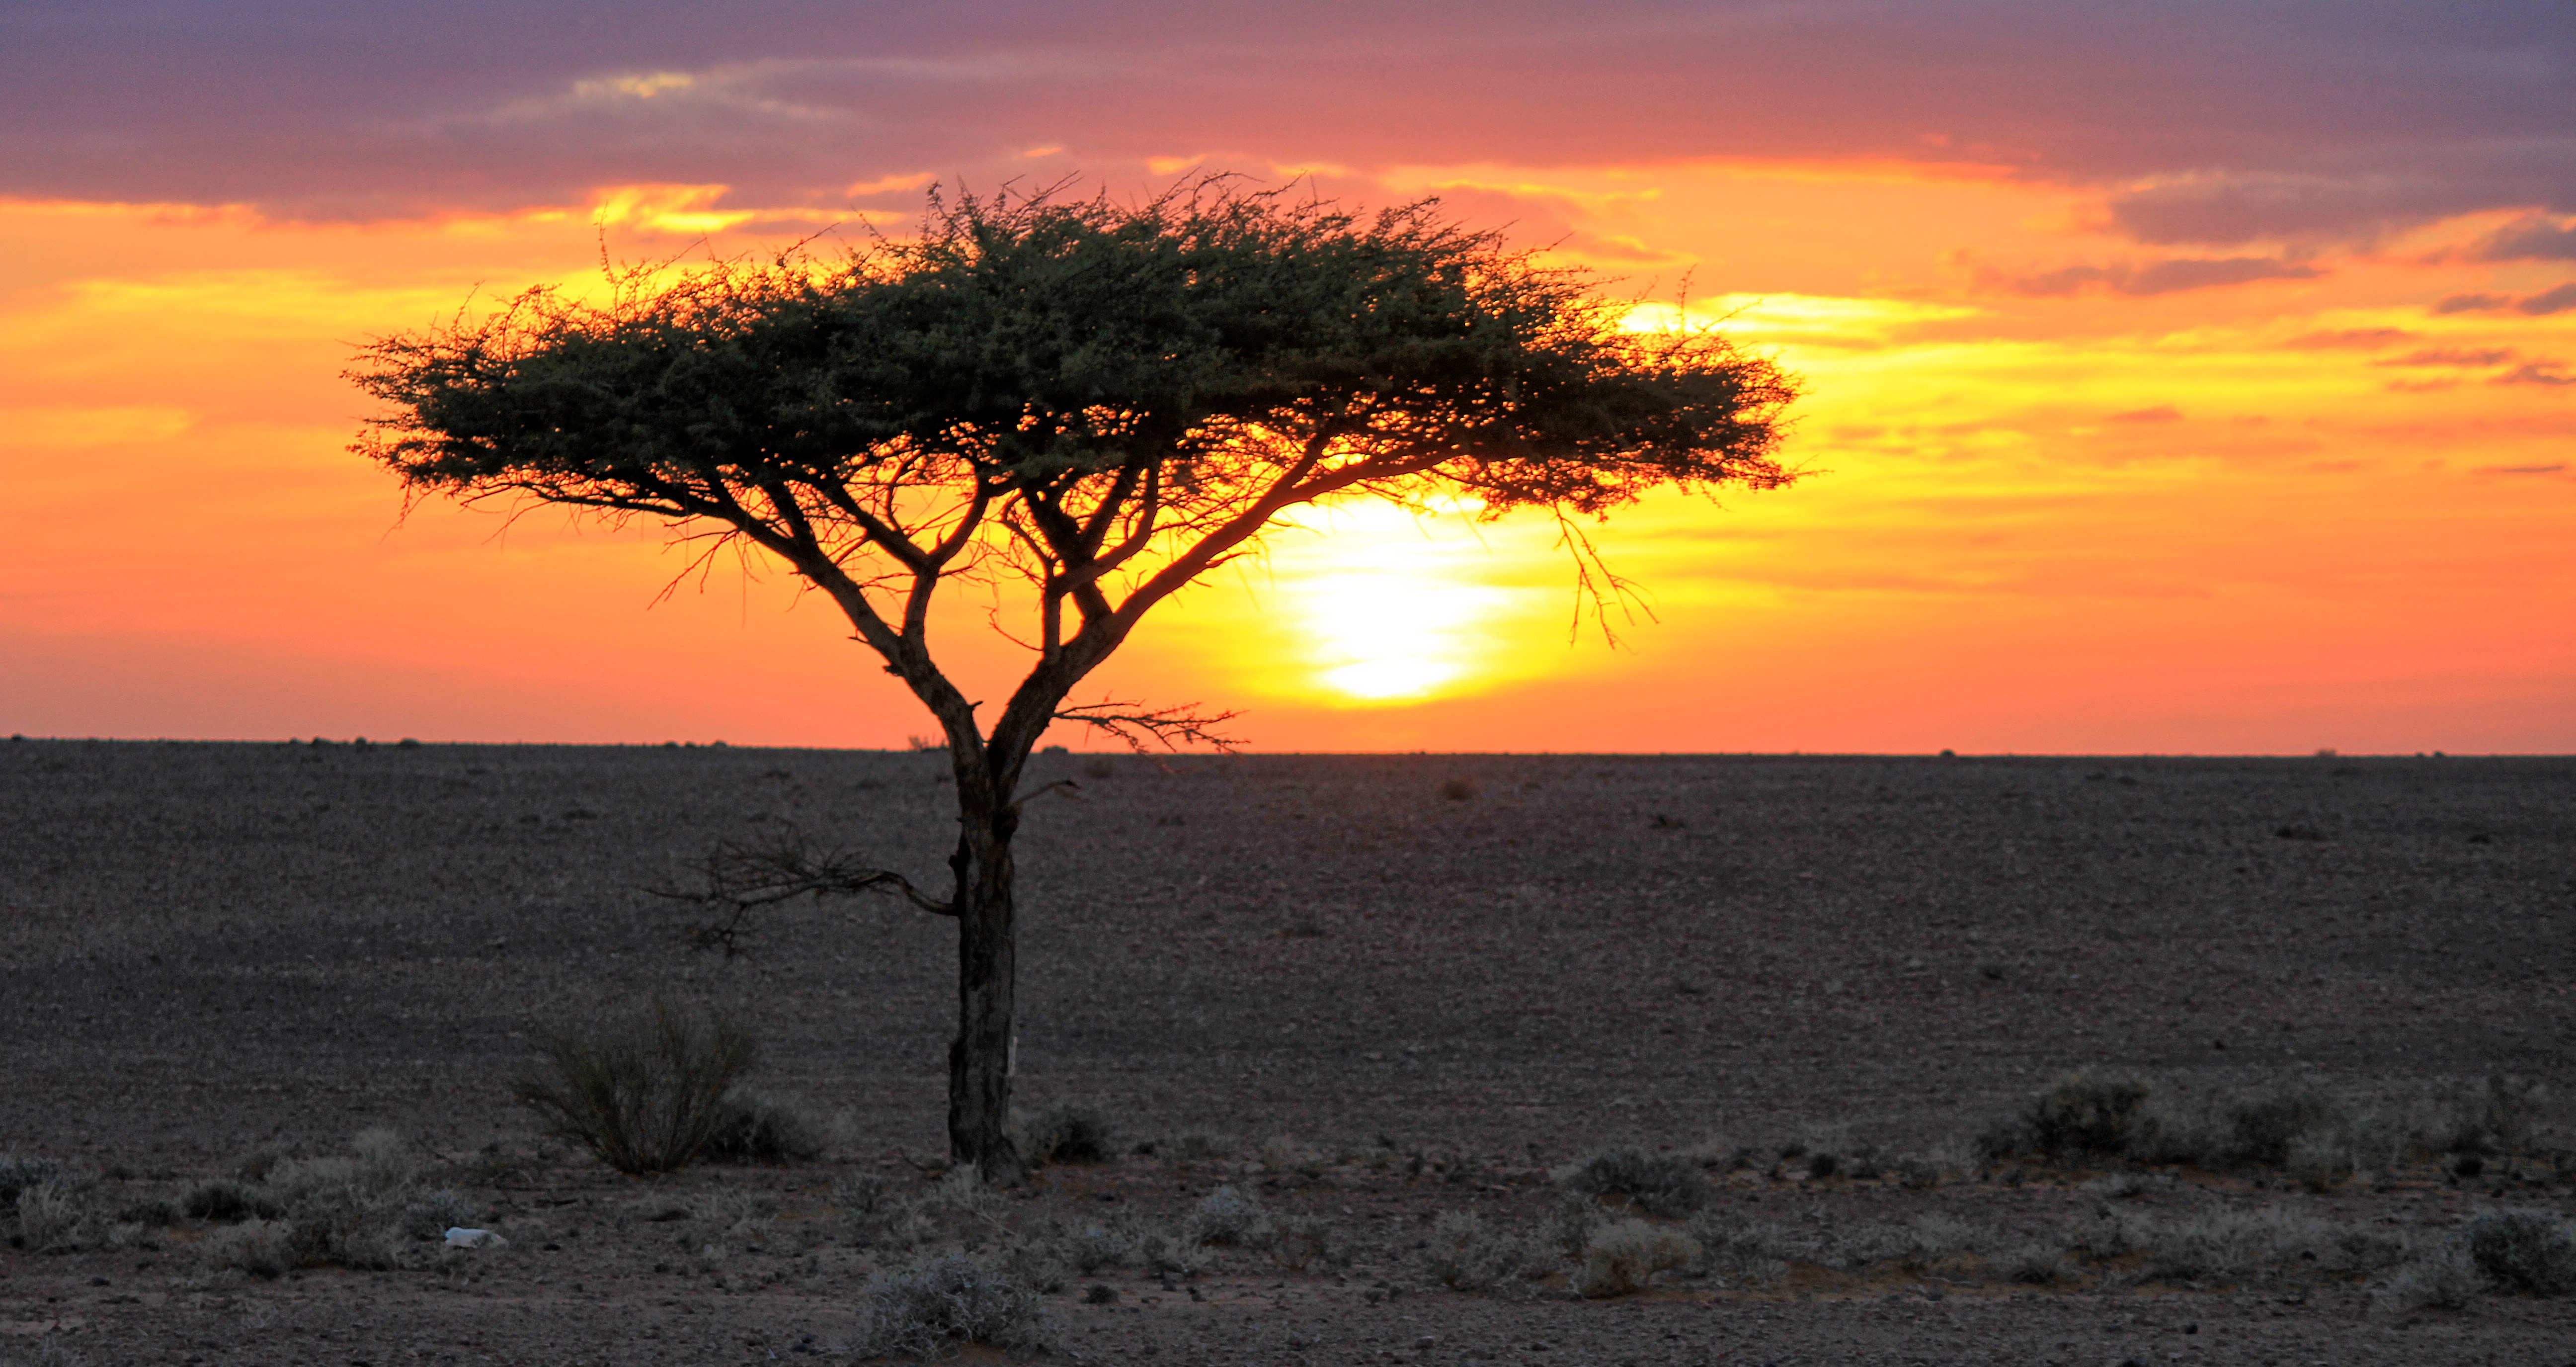 Africa Algeria Desert Landscape Sahara Sunset Tree 5184x2750